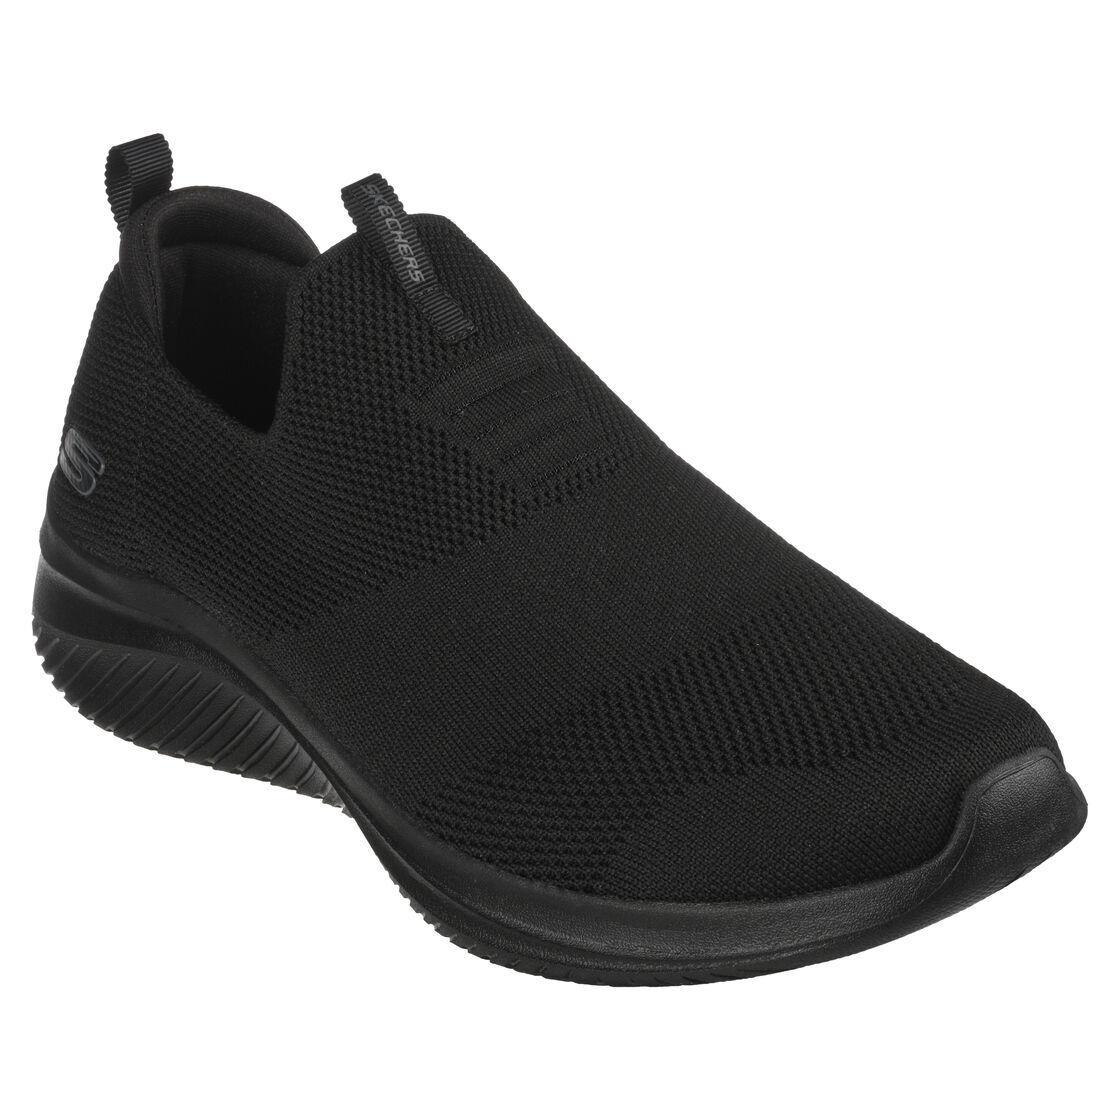 Skechers Black Men Slip On Wide Fit Sport Comfort Shoes Flex Memory Foam 232314